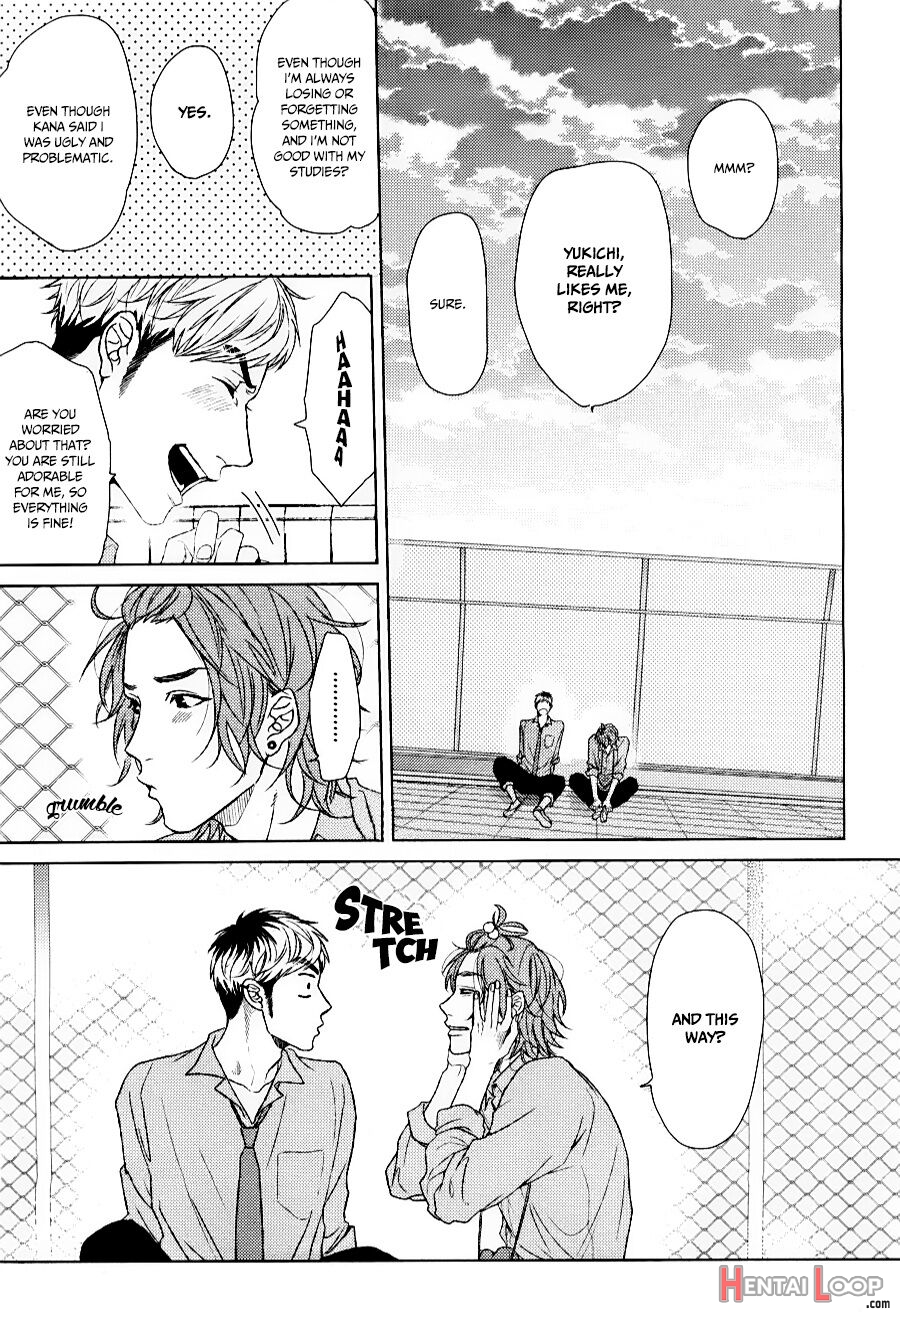 Ogeretsu Tanaka - Seventeen Maple page 9